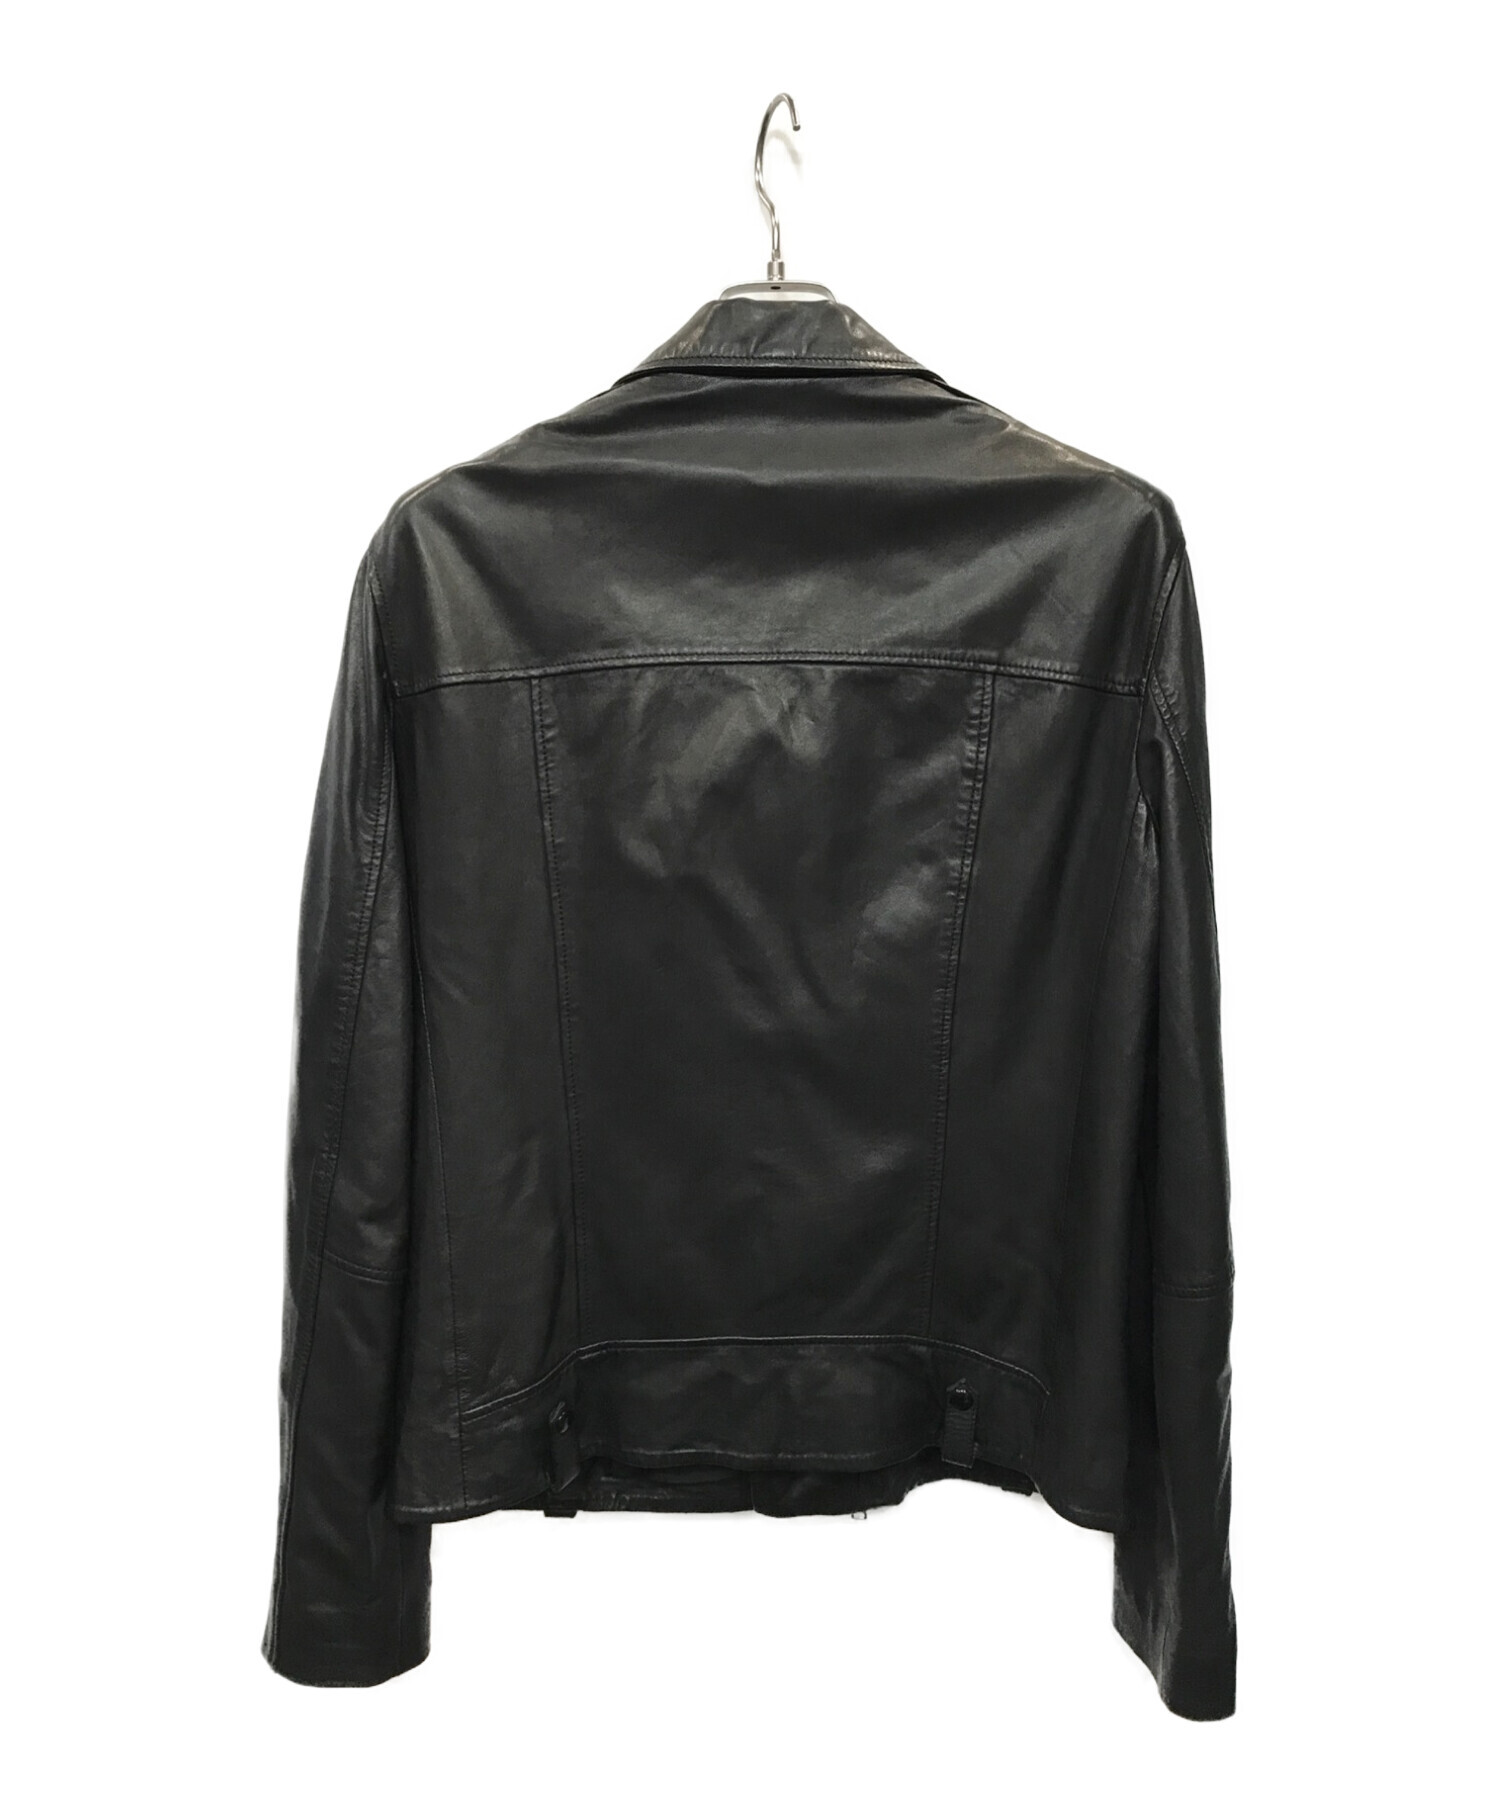 ALL SAINTS (オールセインツ) ライダースジャケット ブラック サイズ:S